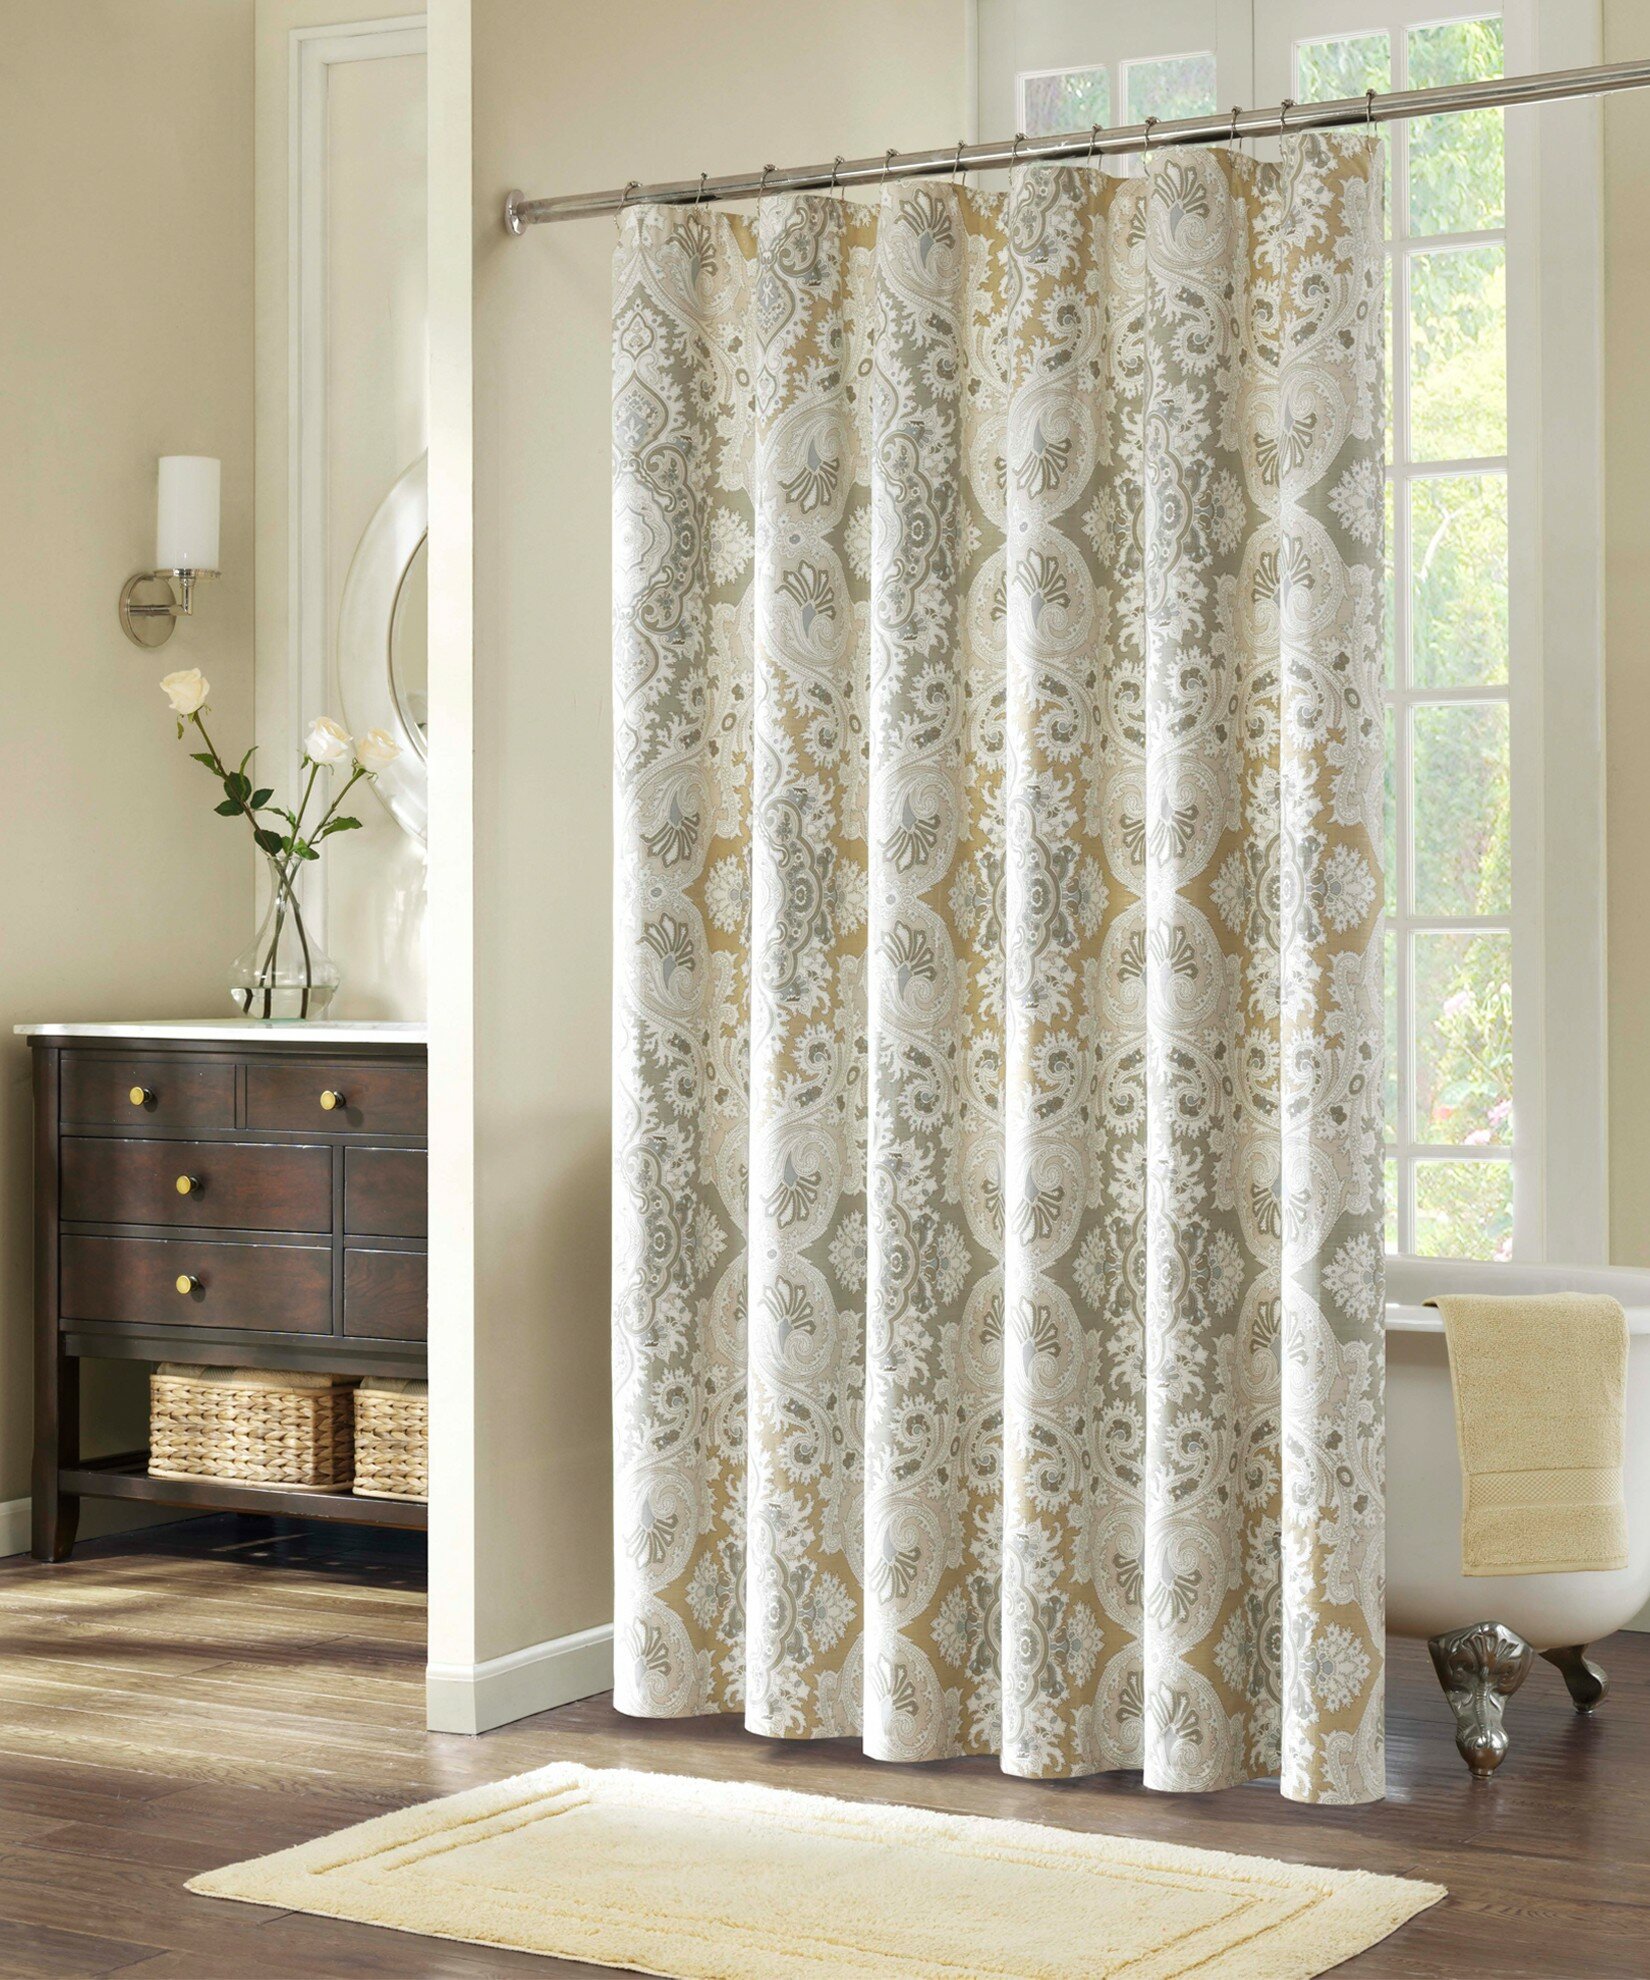 96 Long Shower Curtain | Ikea Shower Curtain | Narrow Shower Curtain